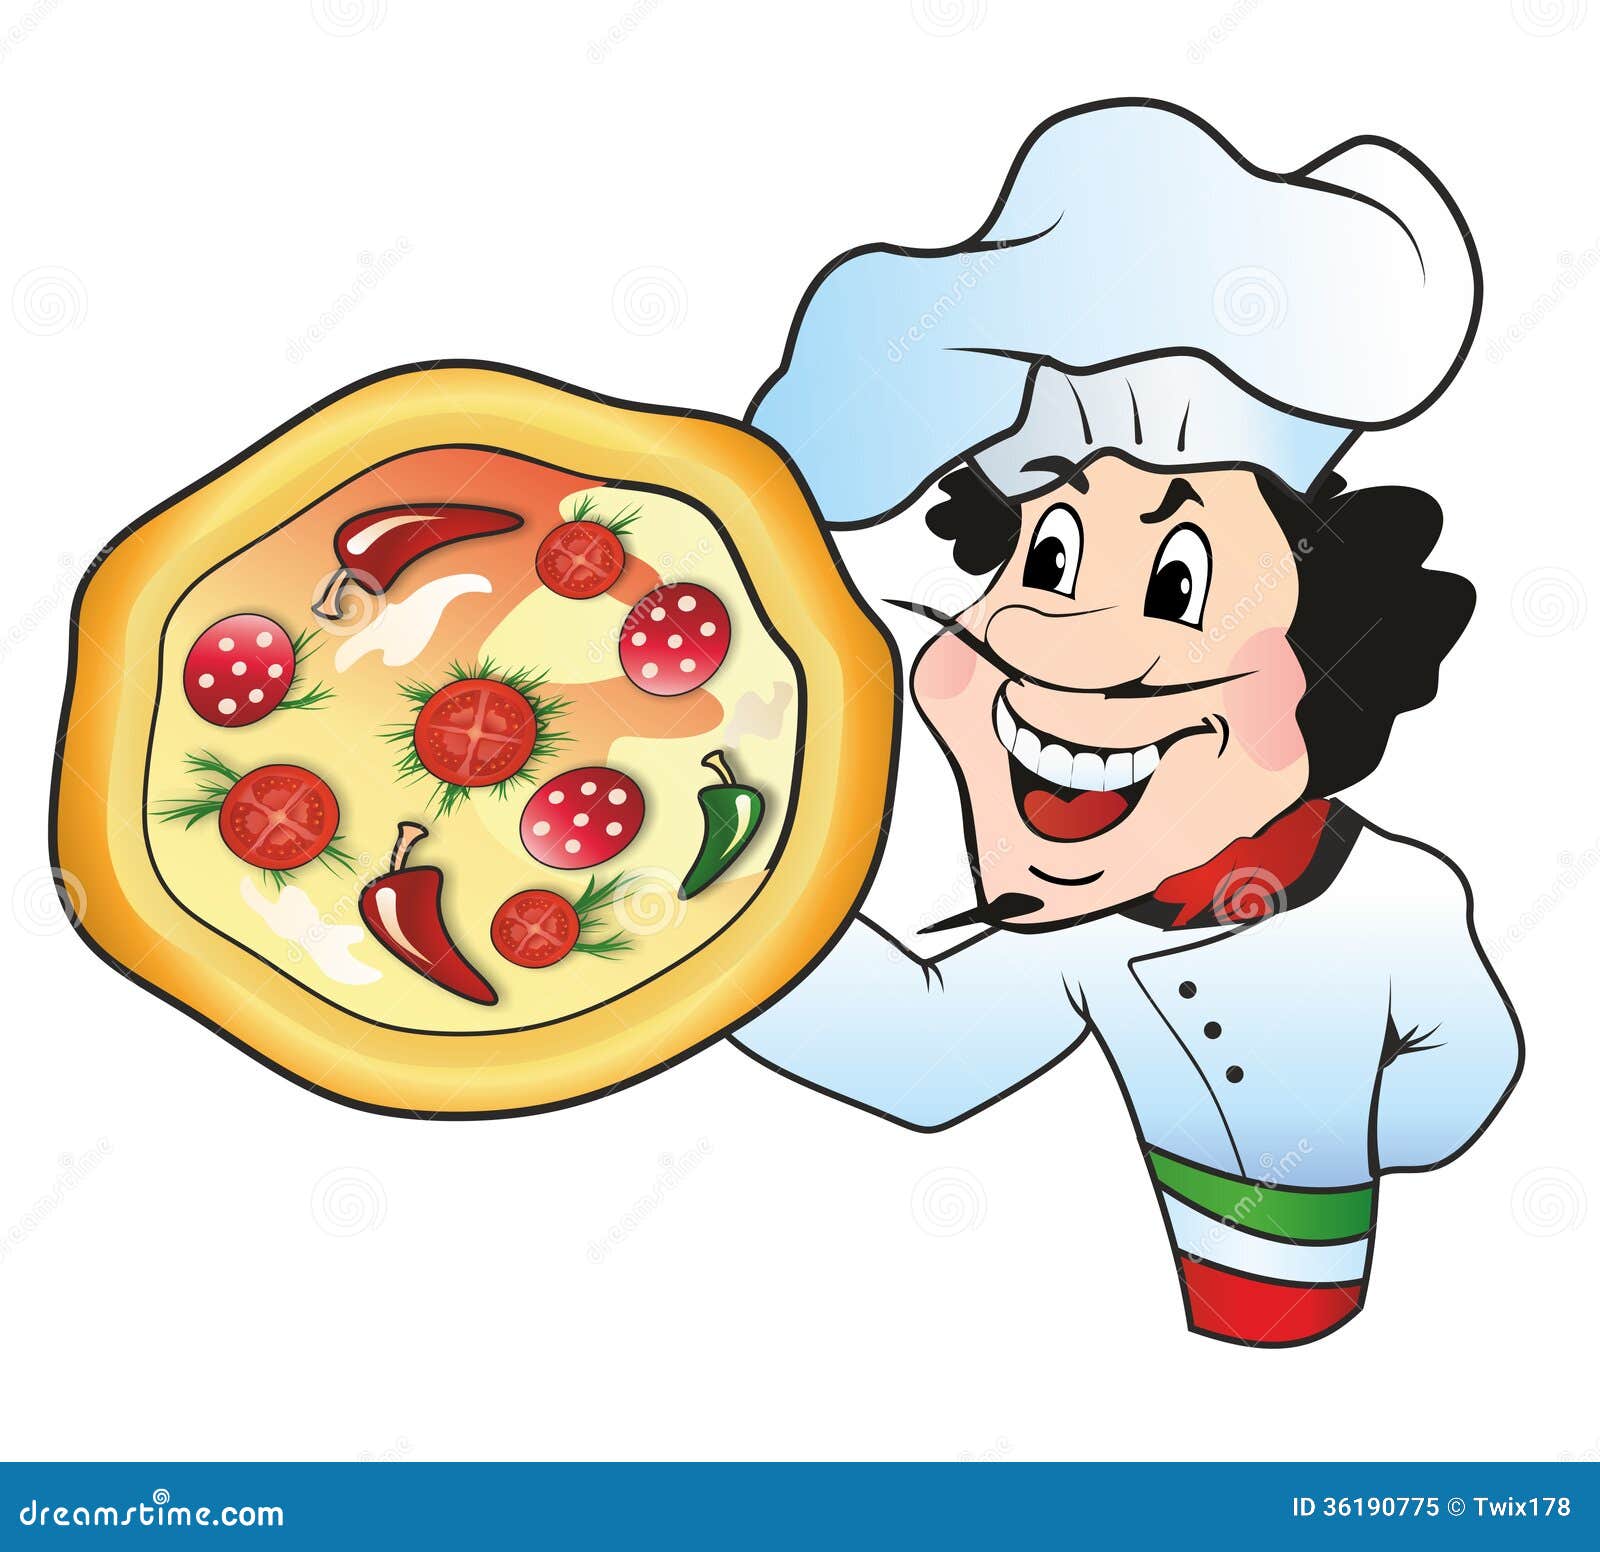 free clipart pizza chef - photo #35